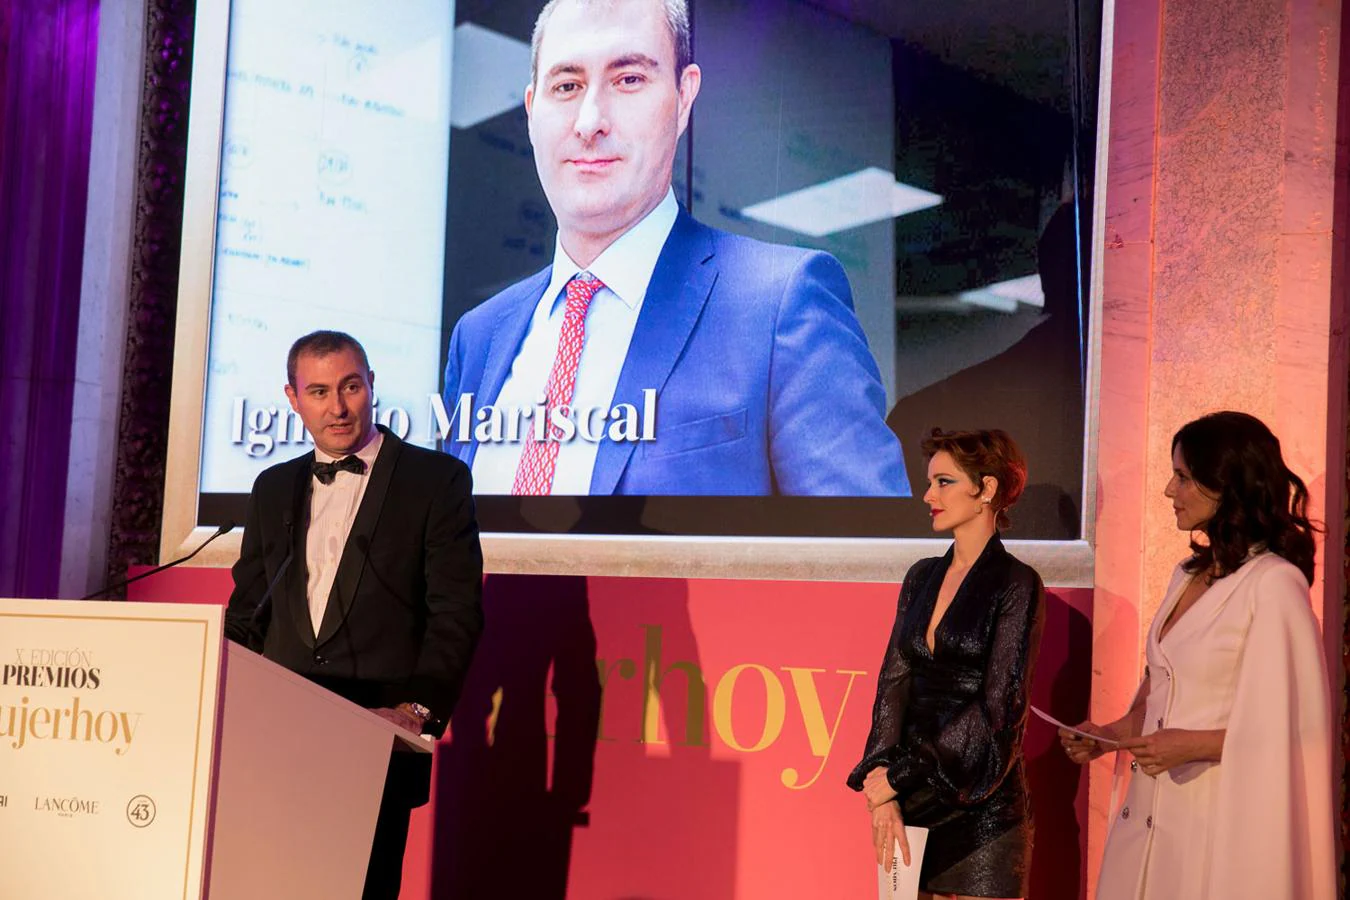 Ignacio Mariscal, CEO de Reale Seguros, en su discurso durante los Premios Mujerhoy.